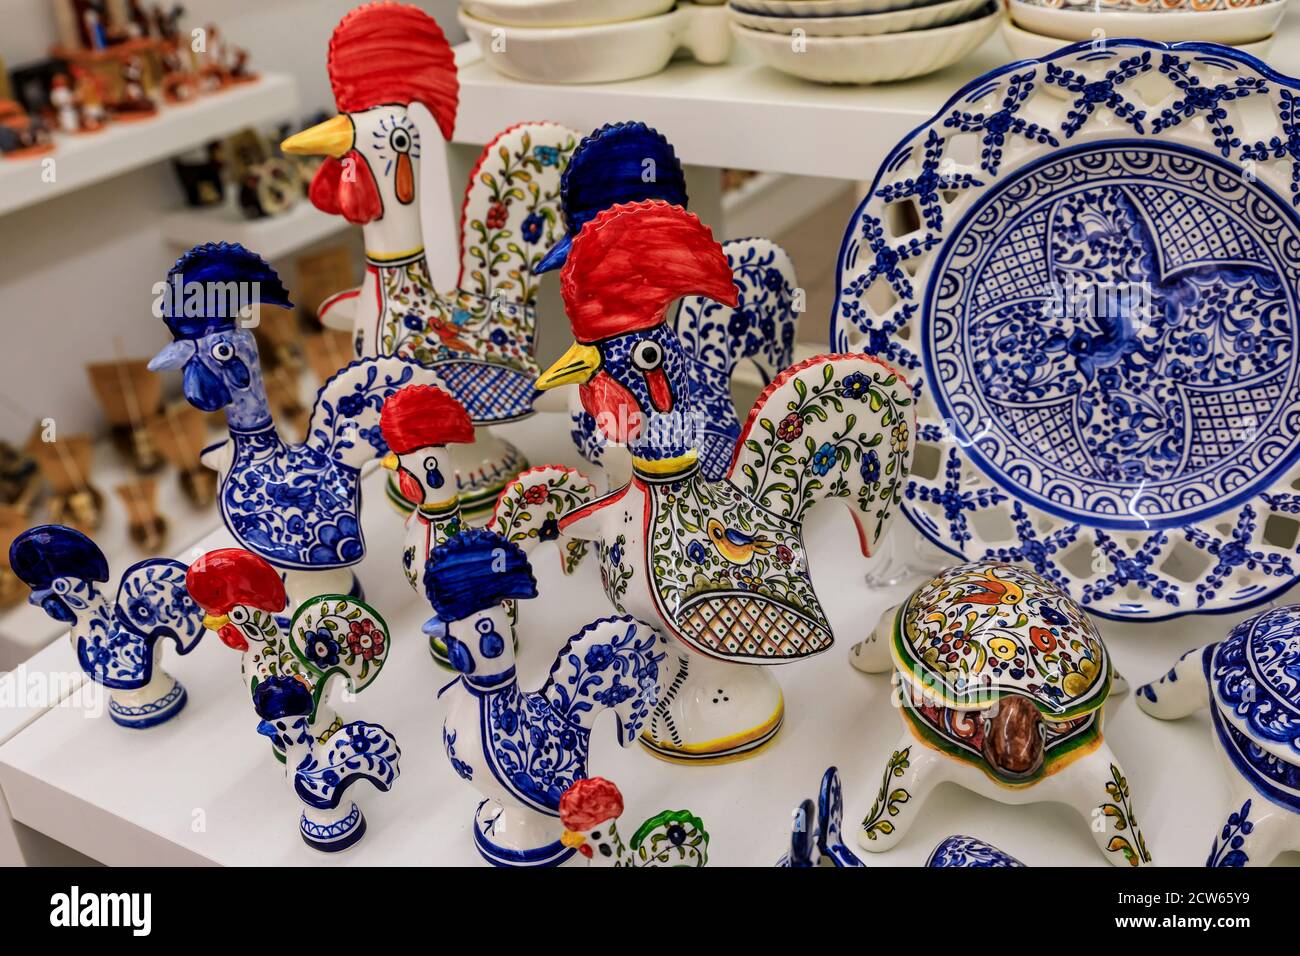 Porto, Portogallo - 29 maggio 2018: Piatti azulejo tradizionali portoghesi e Barcelos Rooster o Galo de Barcelos in esposizione presso un negozio di souvenir Foto Stock